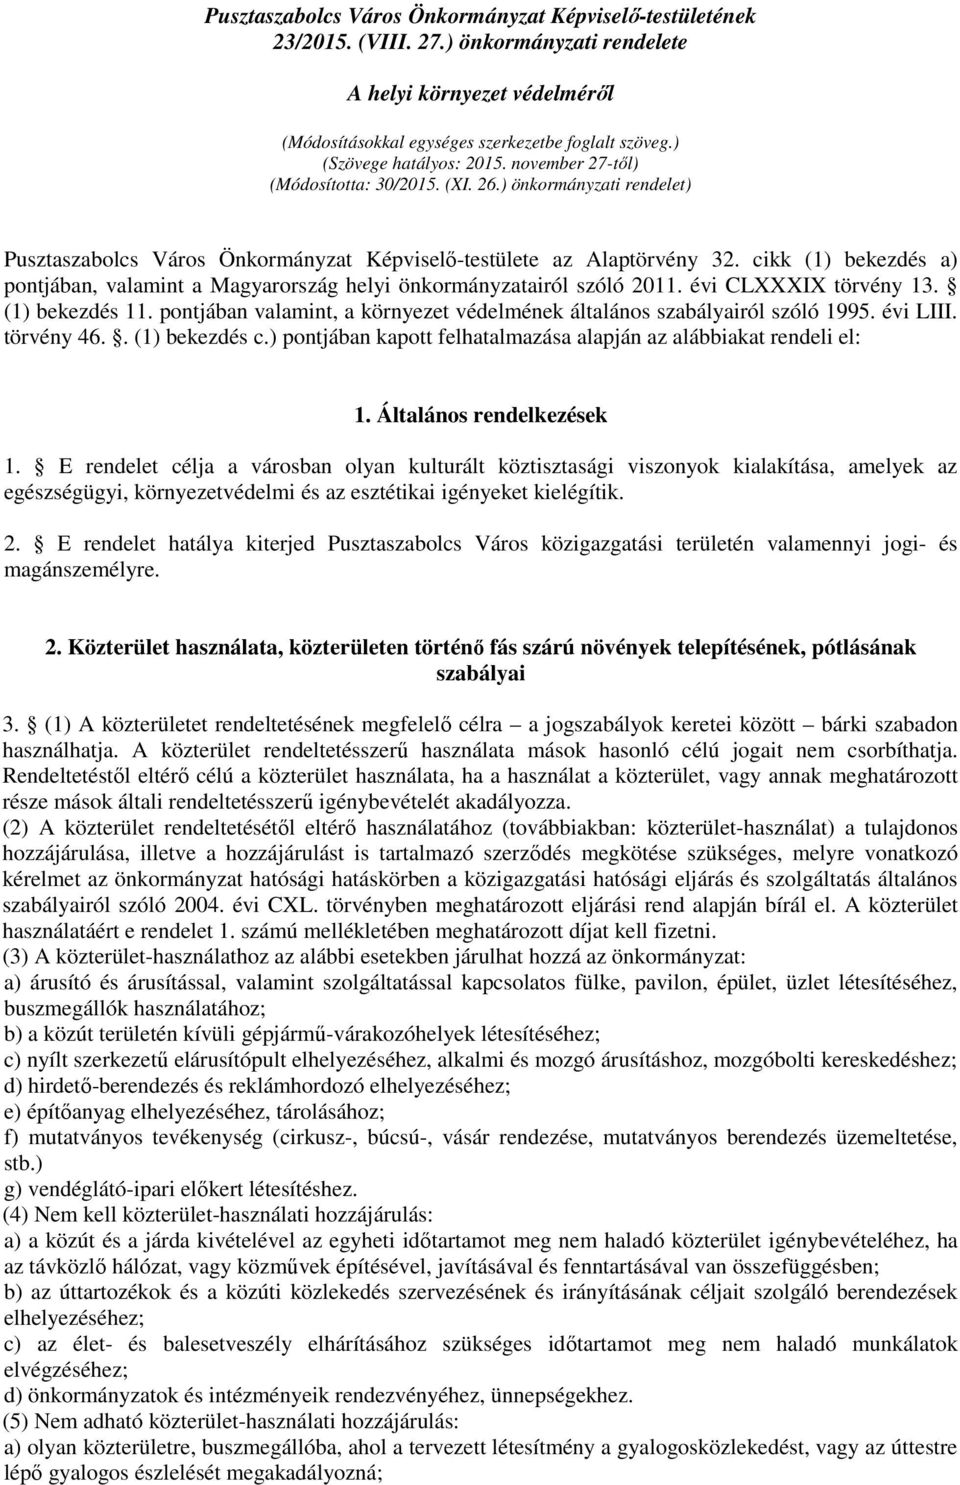 cikk (1) bekezdés a) pontjában, valamint a Magyarország helyi önkormányzatairól szóló 2011. évi CLXXXIX törvény 13. (1) bekezdés 11.